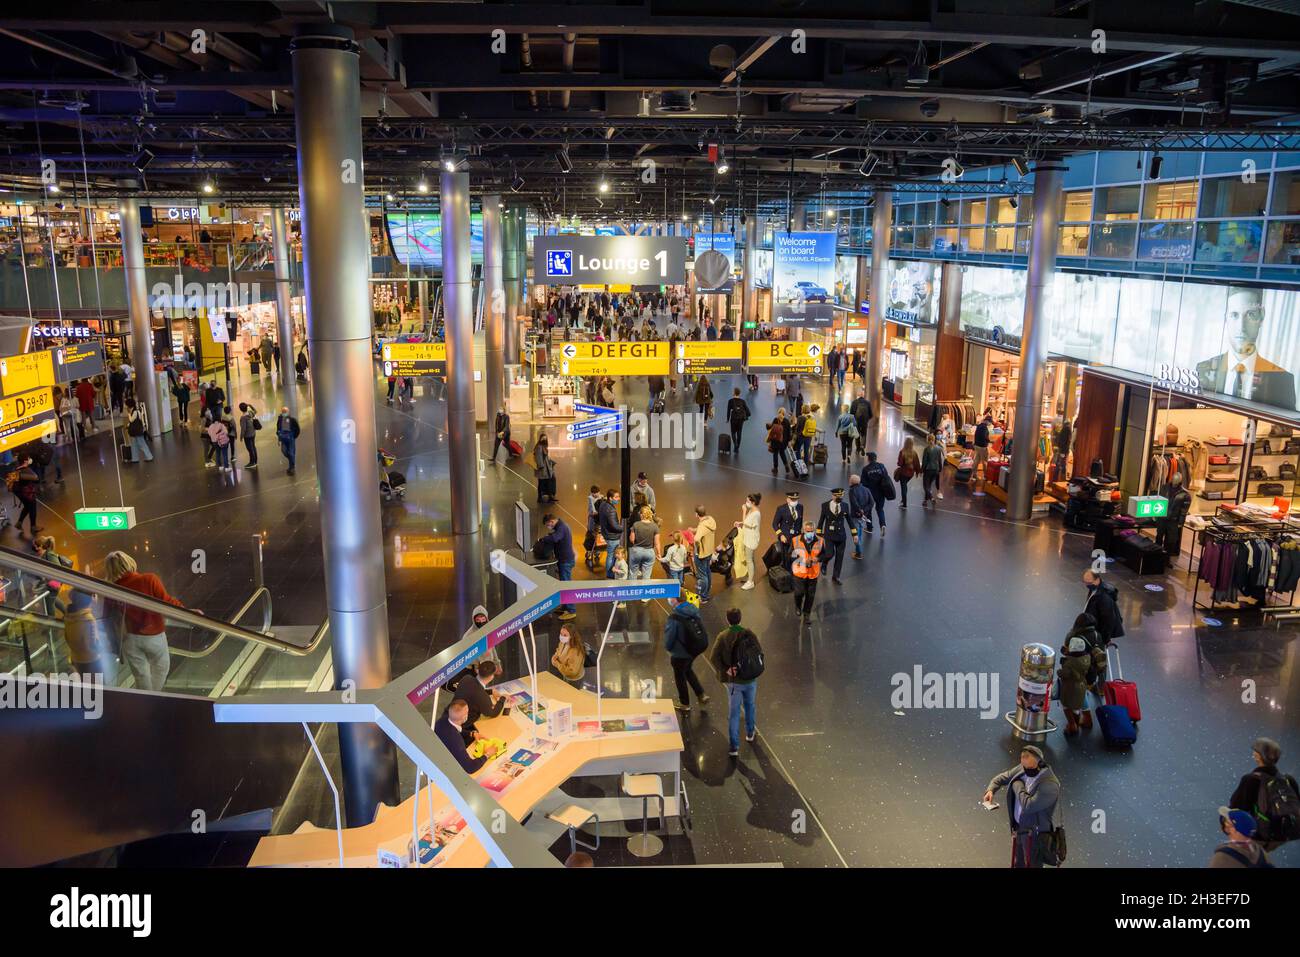 Flughafen Schiphol, Niederlande - 17. Oktober 2021: Überfüllte Abfluglounge mit Geschäften und Restaurants in der Schengen-Zone des Terminals Stockfoto